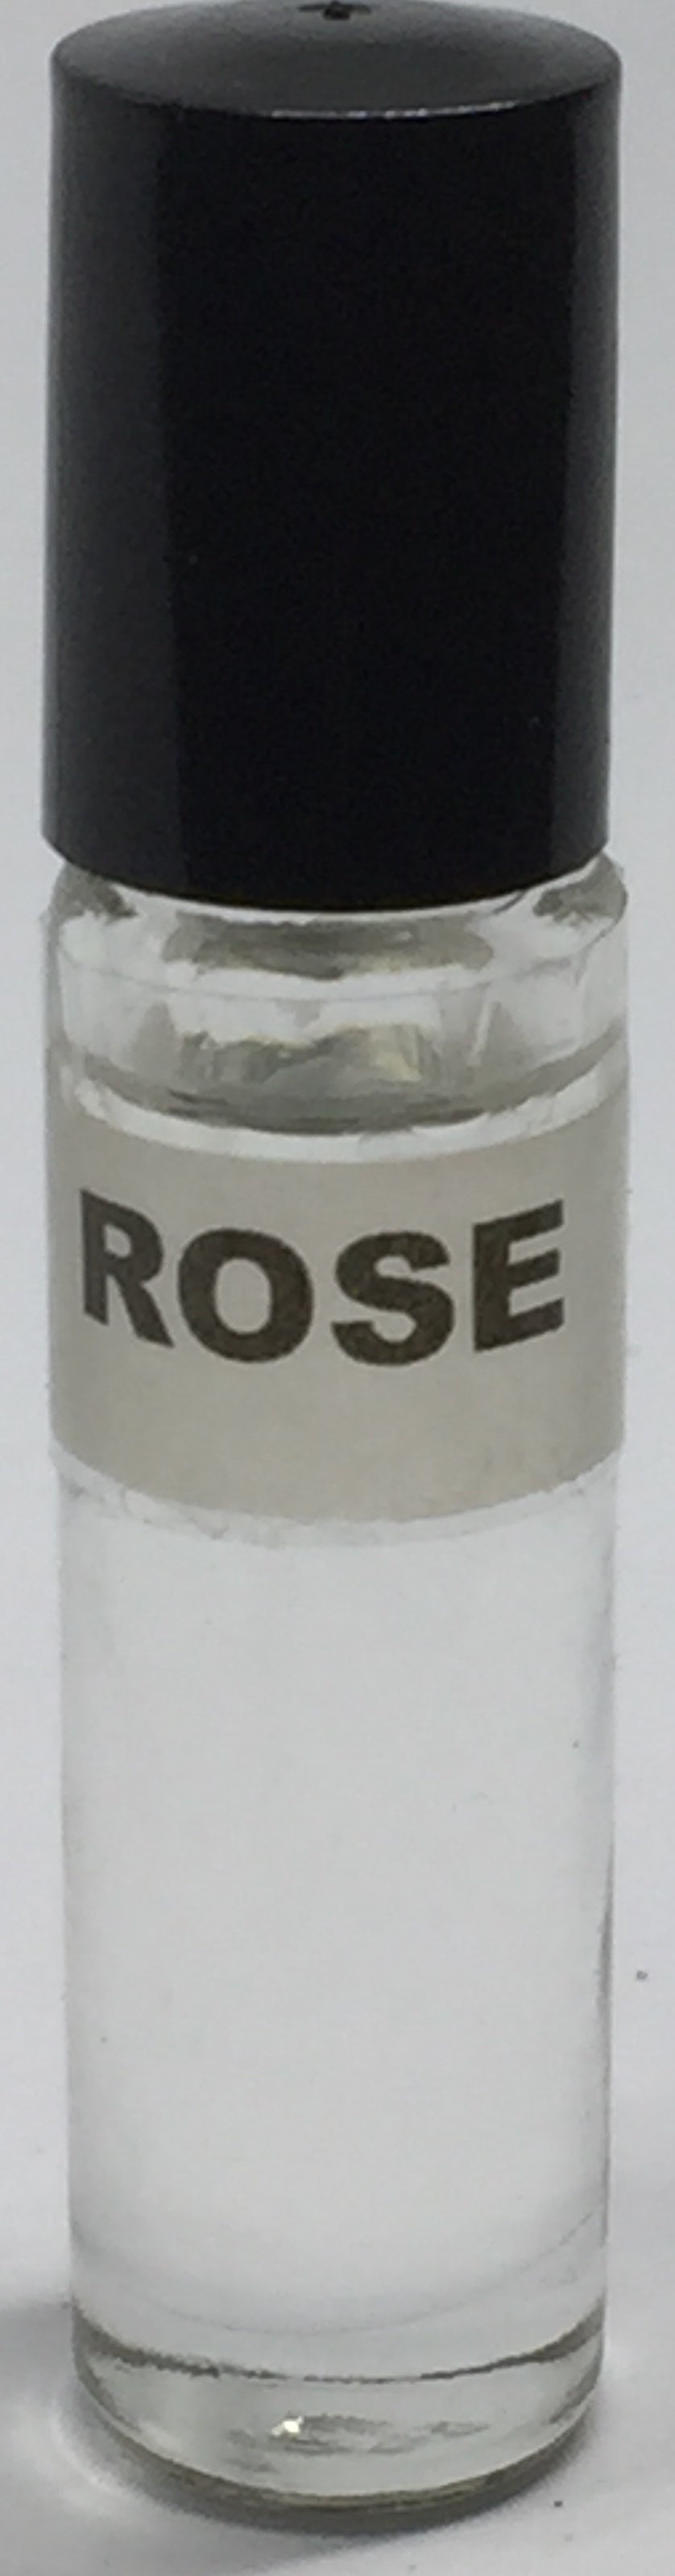 Rose: Fragrance (Perfume)Body Oil Women